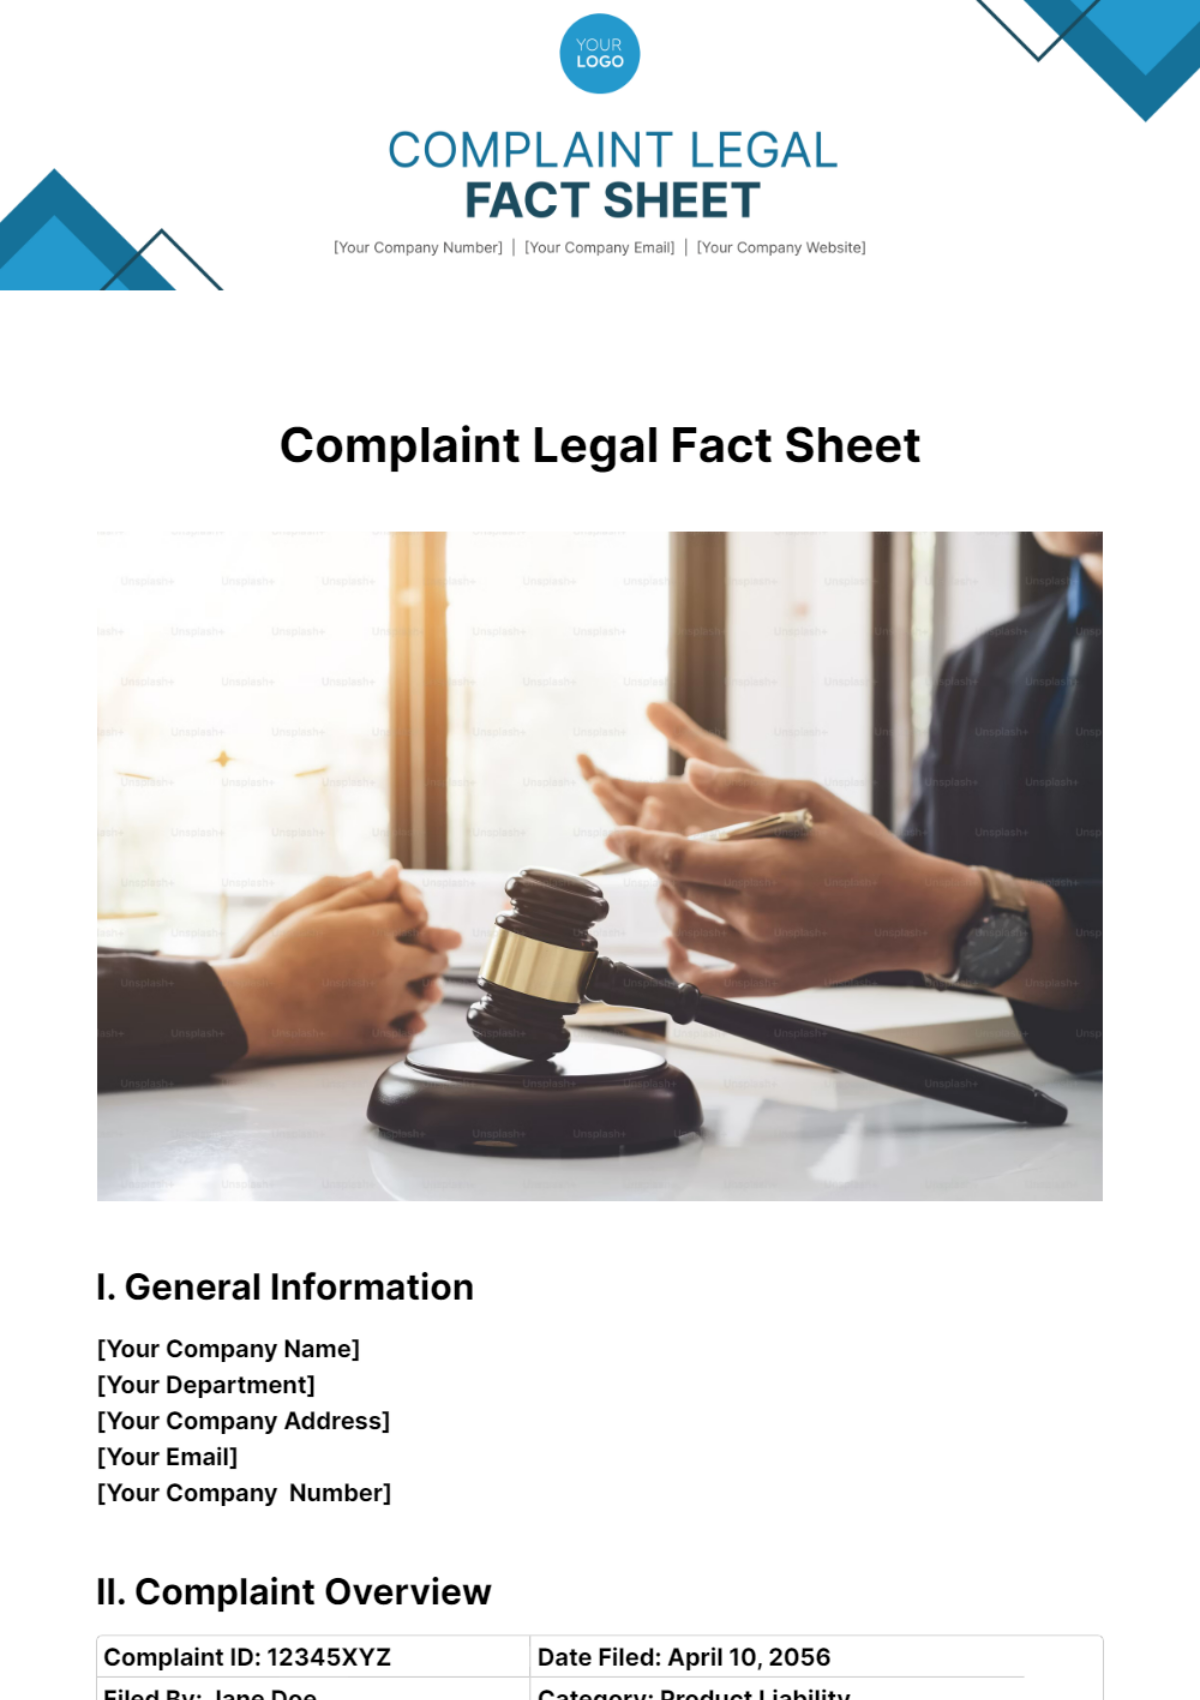 Complaint Legal Fact Sheet Template